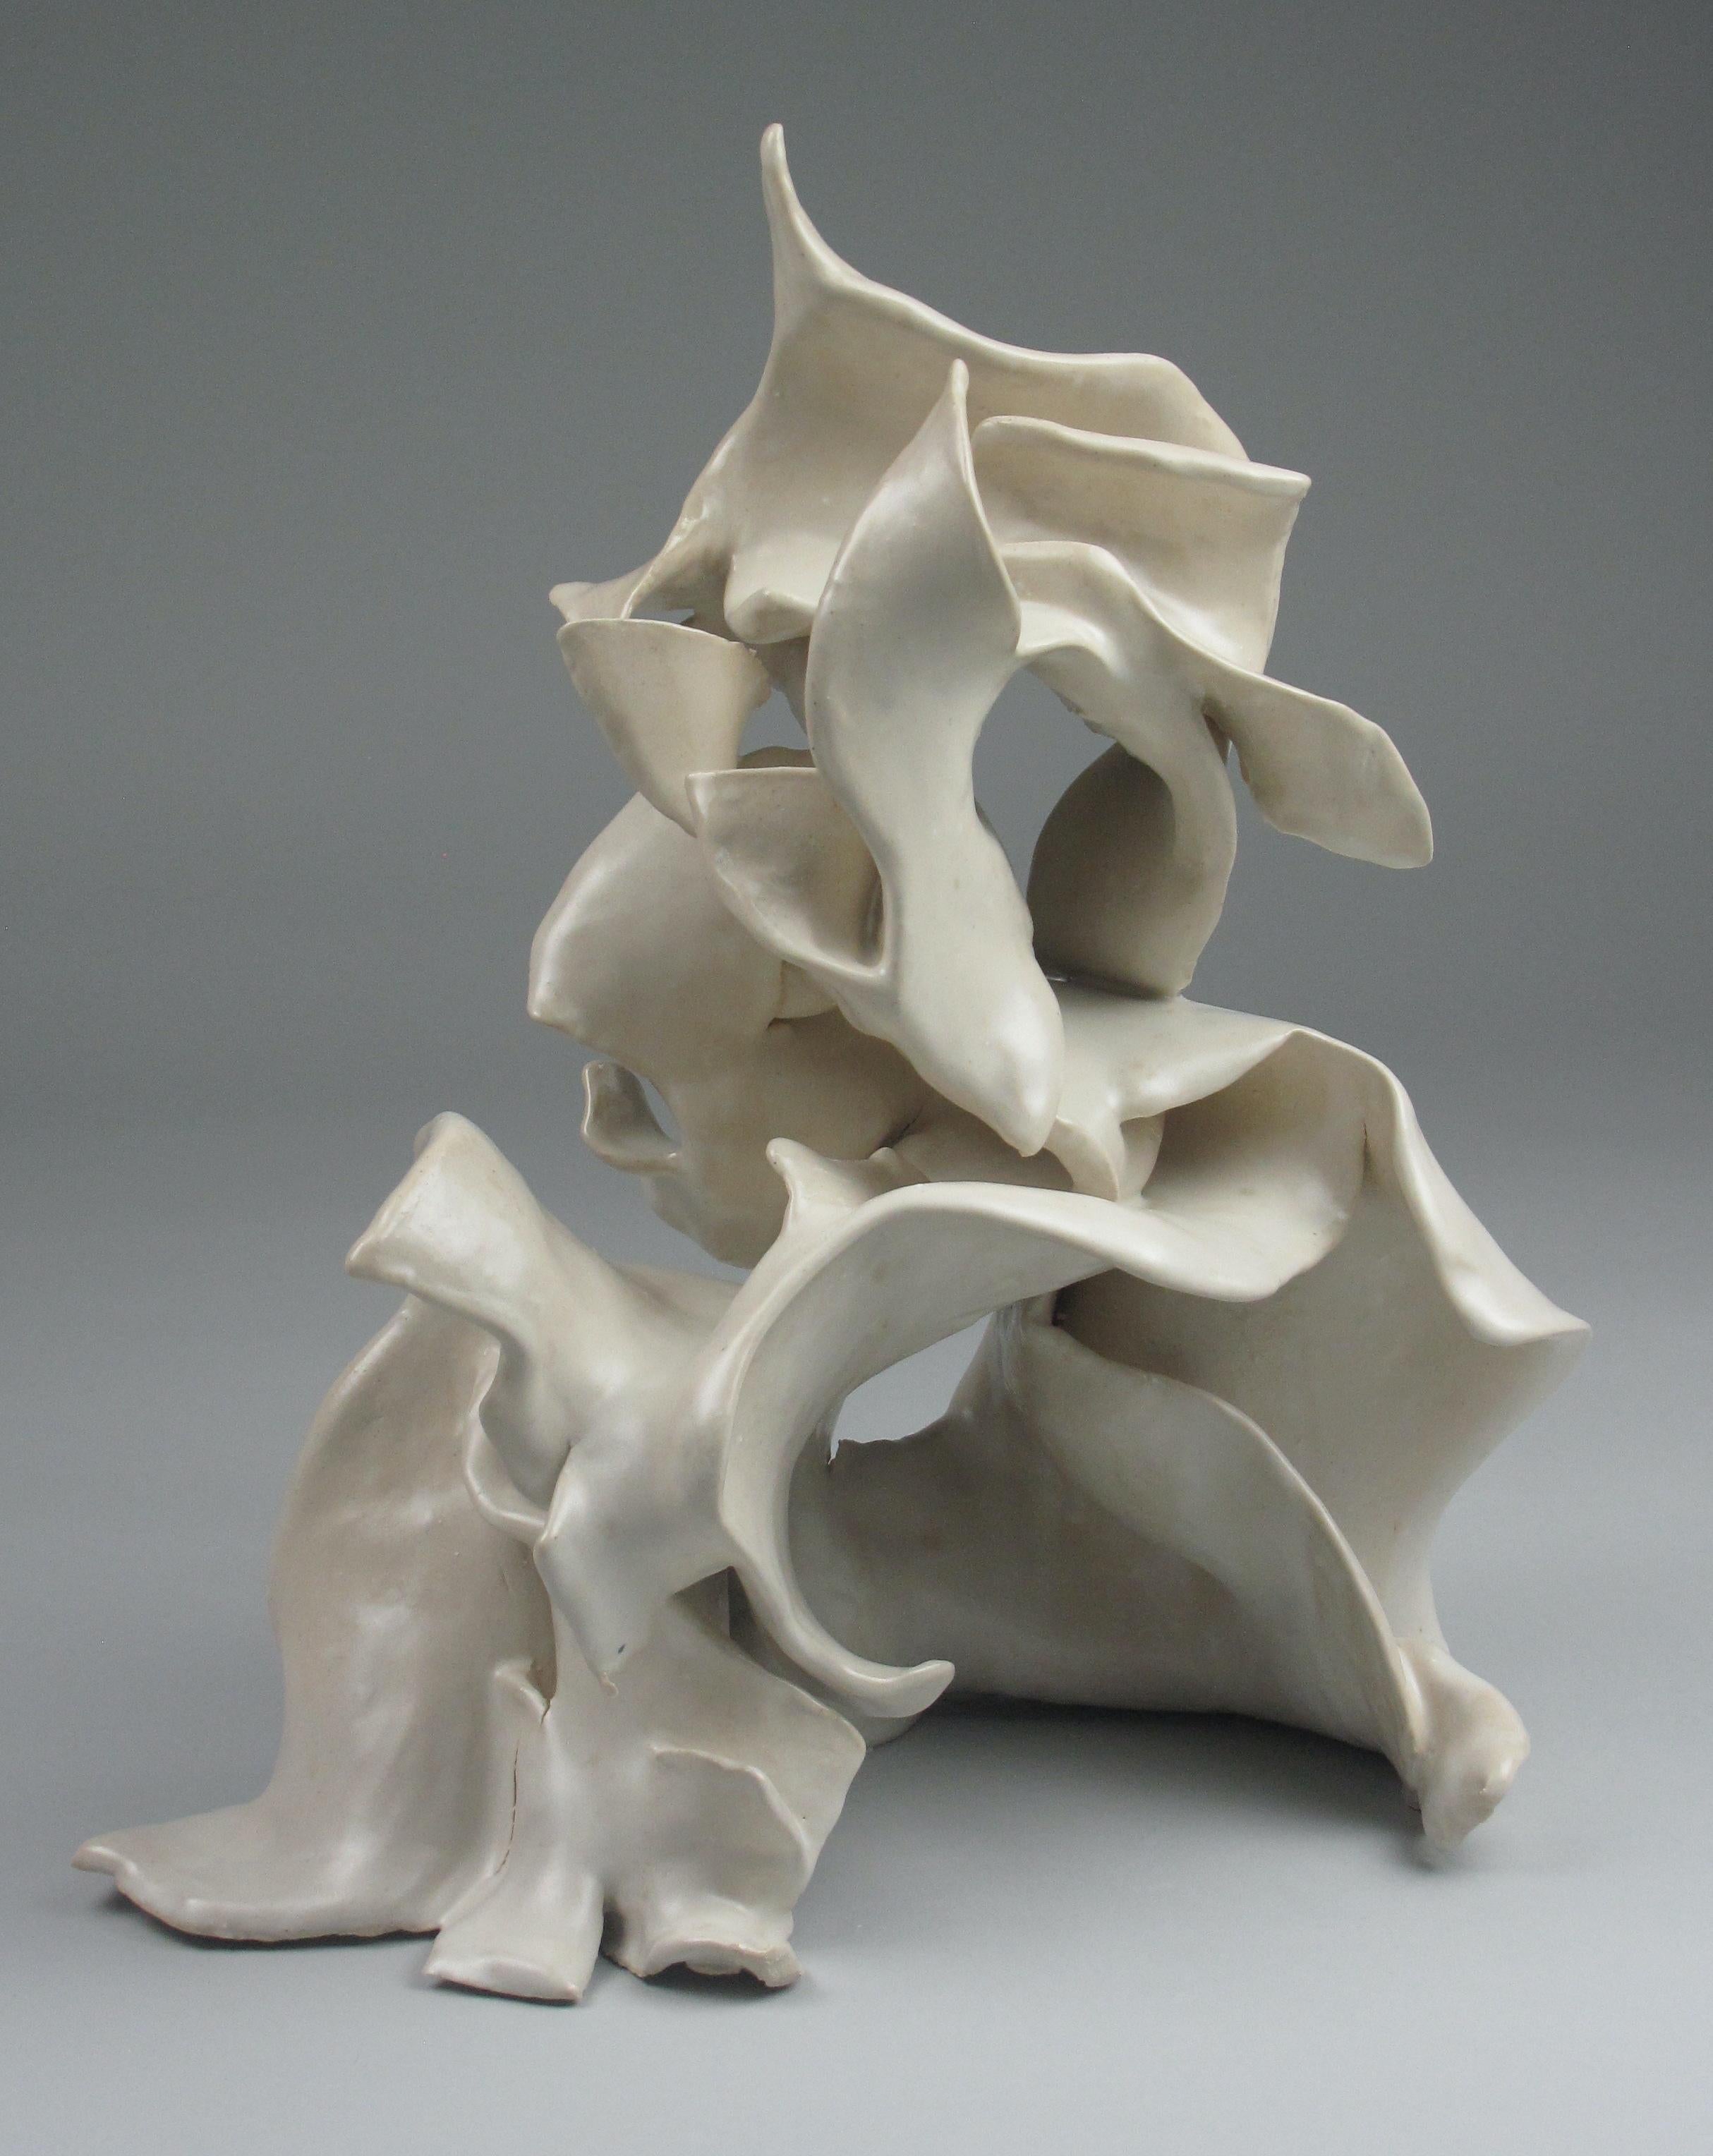 Sara Fine-Wilson Abstract Sculpture - "Arc", gestural, ceramic, graceful, fluid, white, cream, stoneware, sculpture